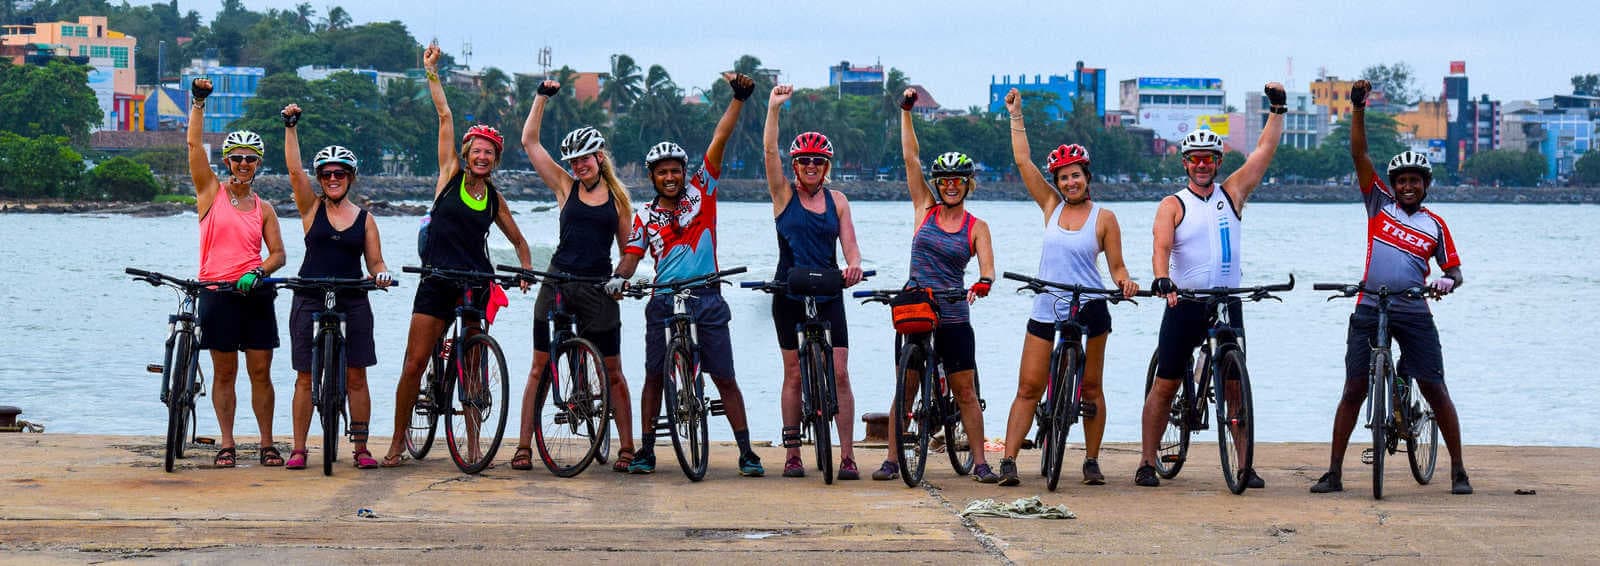 صورة لمجموعة من راكبي الدراجات السعداء شاركوا في ركوب الدراجات في جالي ريف سريلانكا